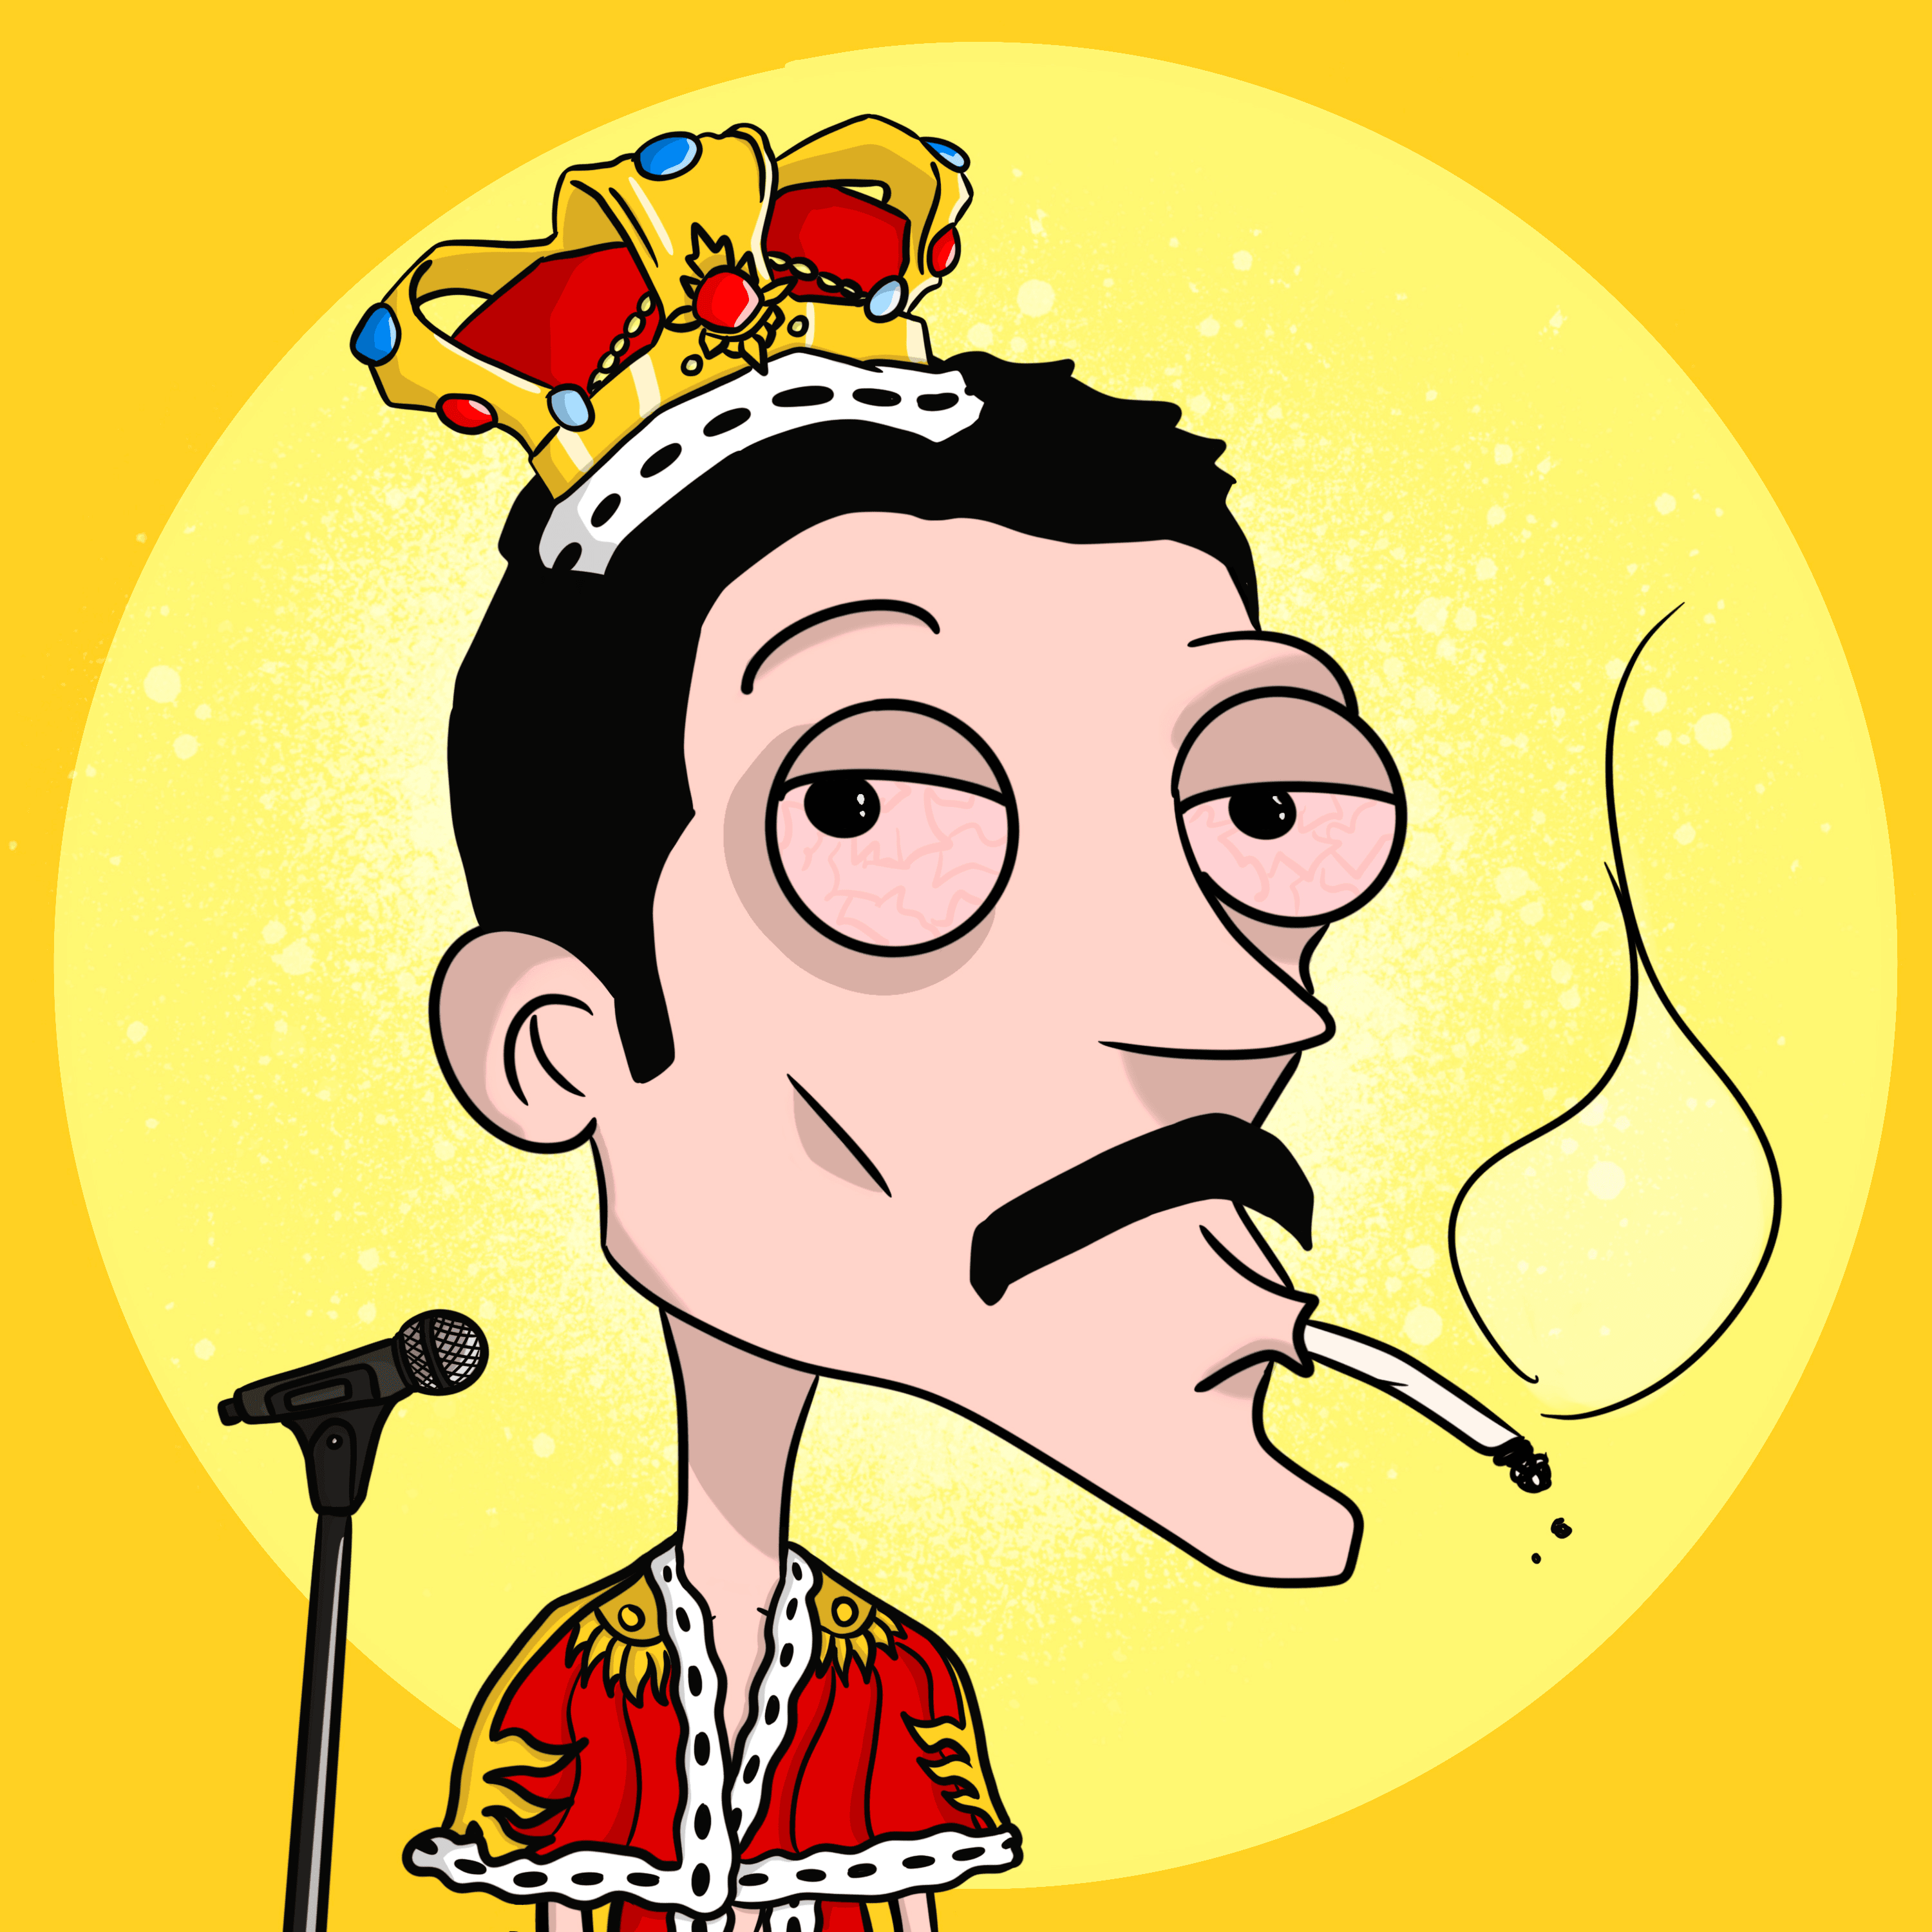 S1 - Freddie Mercury